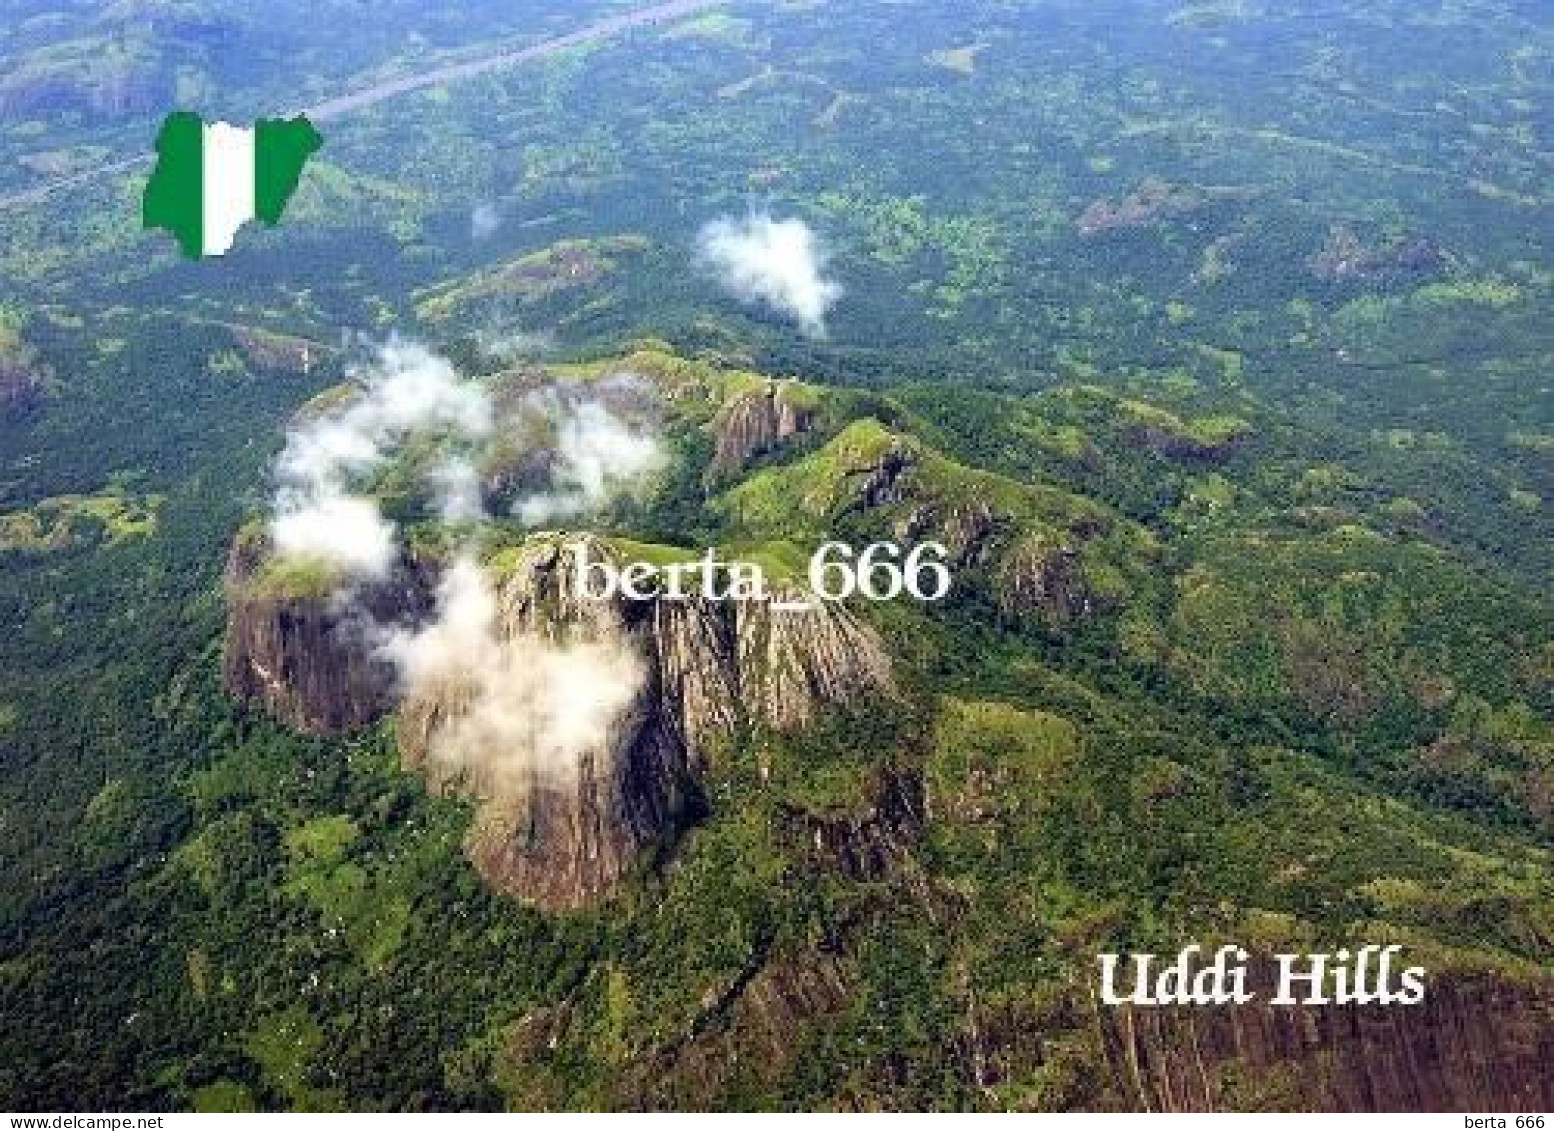 Nigeria Uddi Hills Aerial View New Postcard - Nigeria